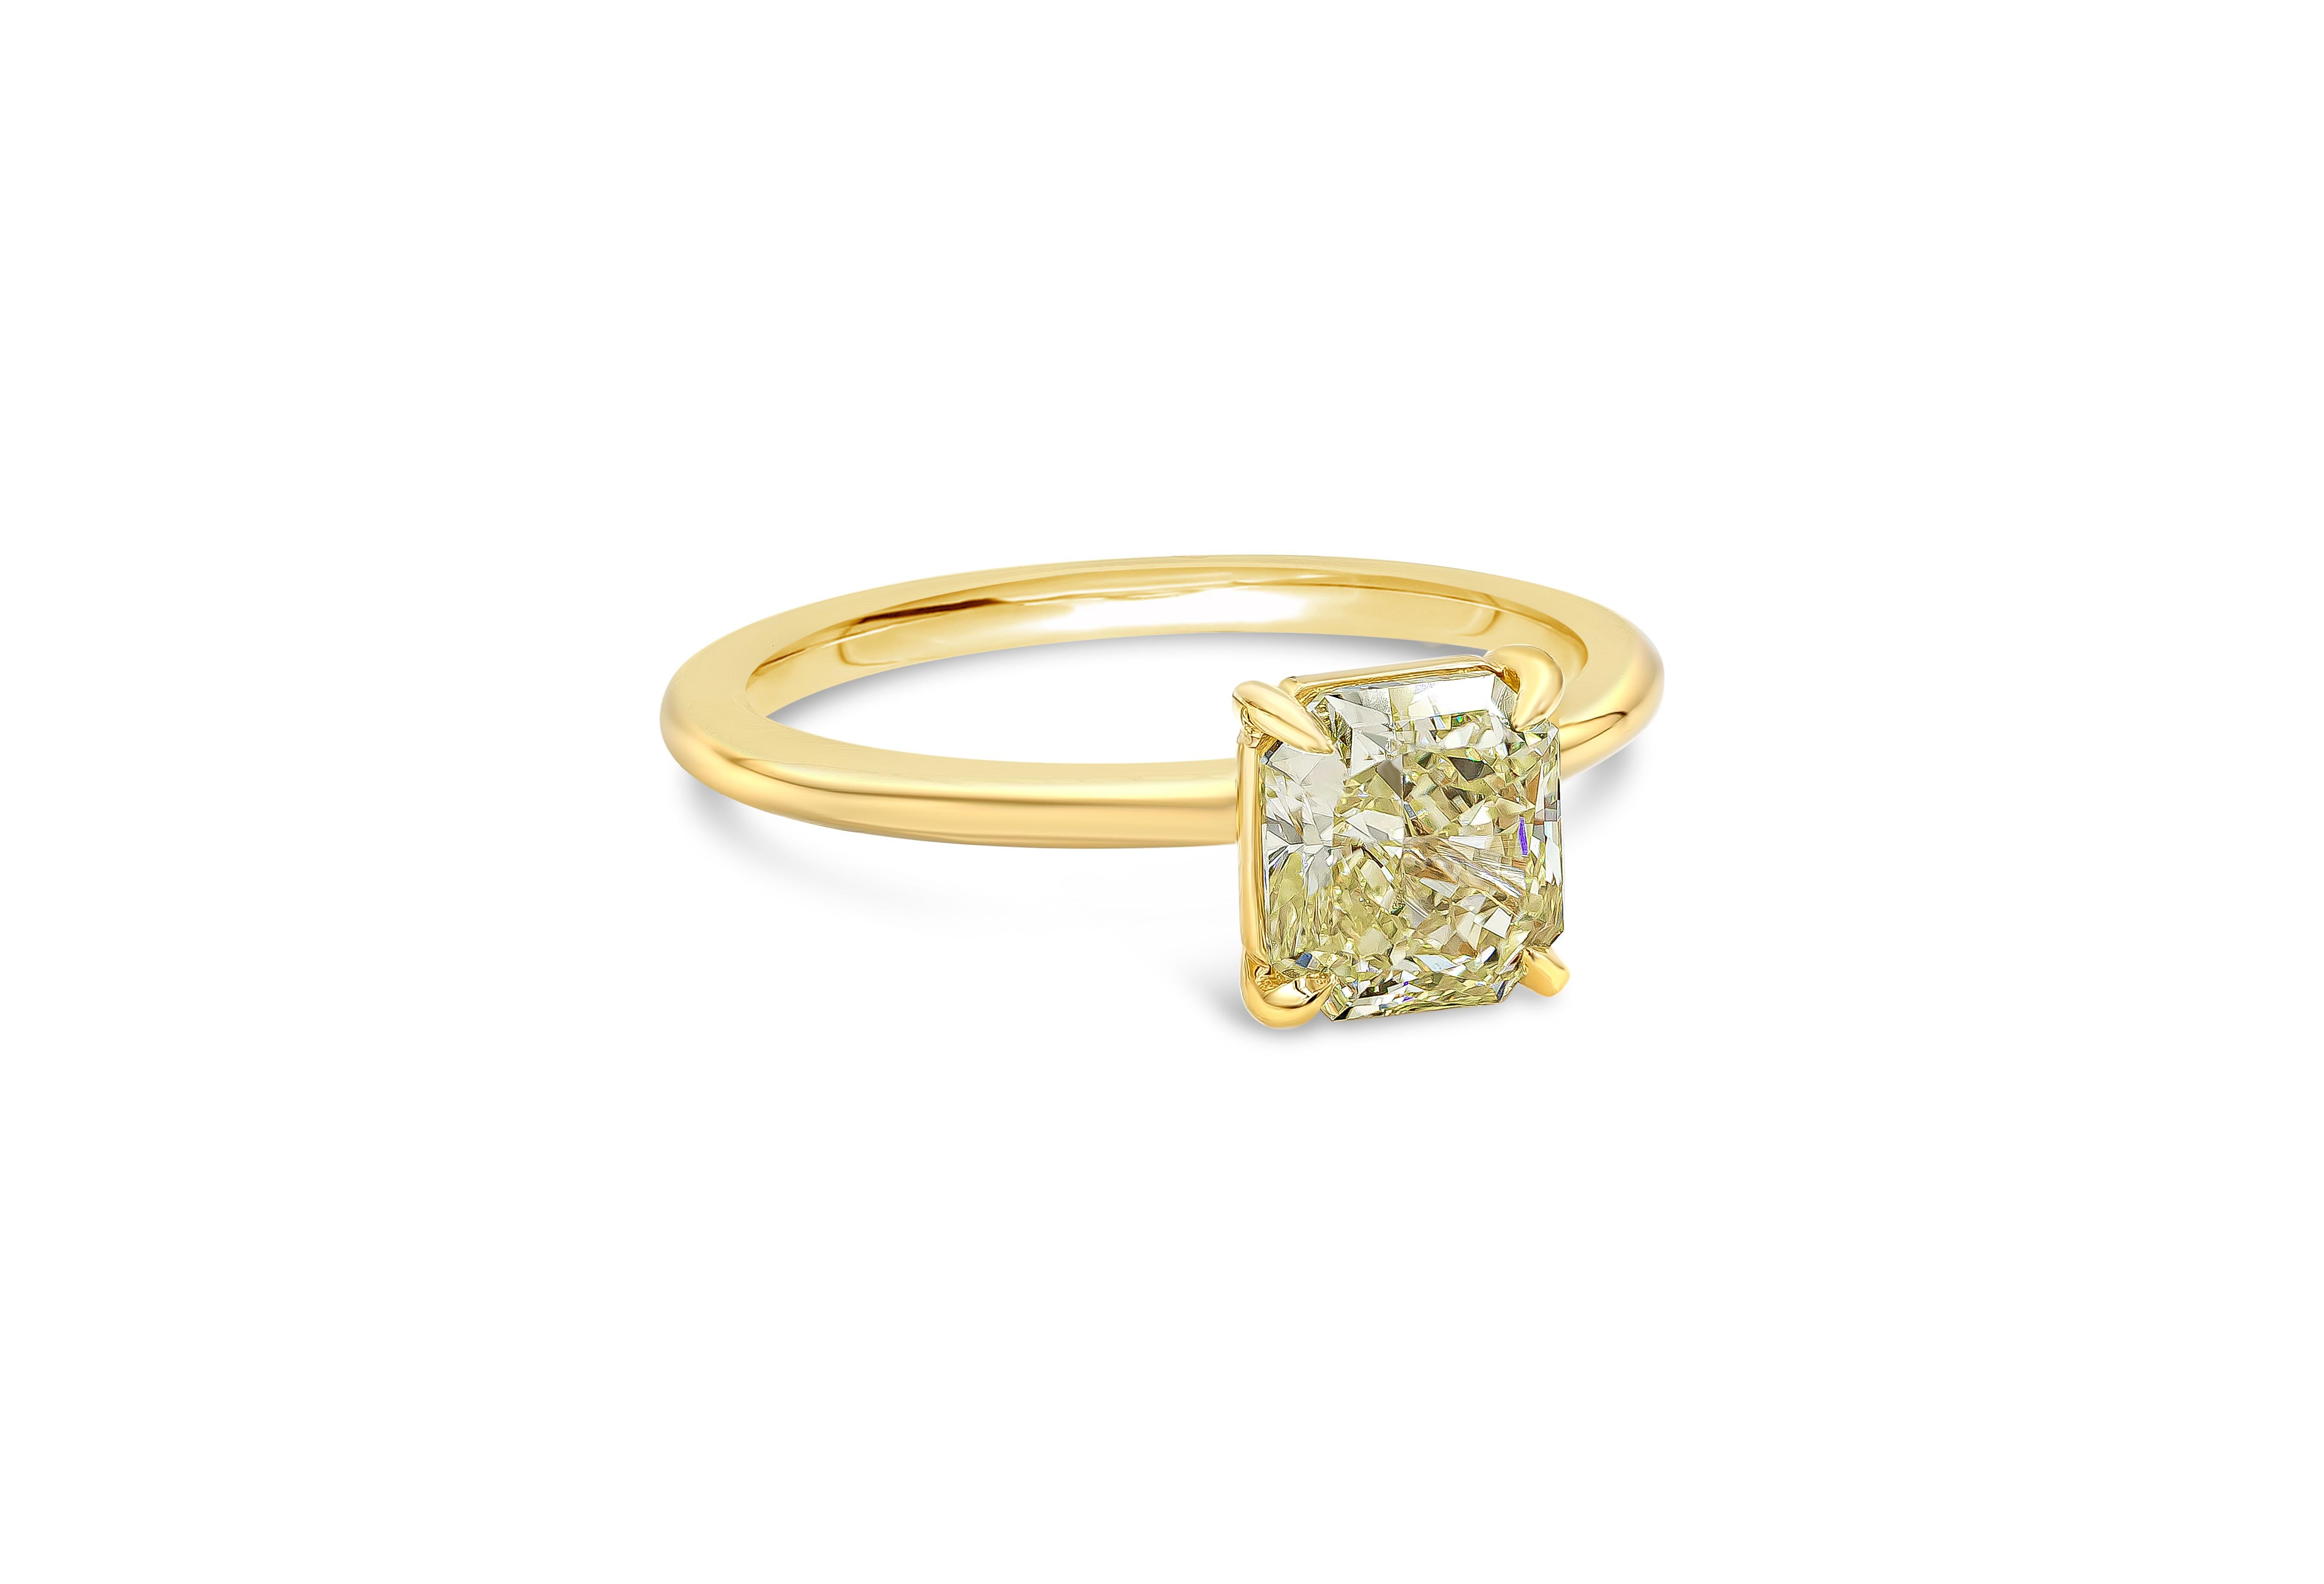 Ein zeitloser Solitär-Verlobungsring mit einem farbenprächtigen gelben Diamanten von 1,35 Karat im Strahlenschliff, der von GIA als Fancy Intense Yellow (intensiv gelbe Farbe) und VS2 (Reinheit) zertifiziert wurde. Eingefasst in eine dünne polierte